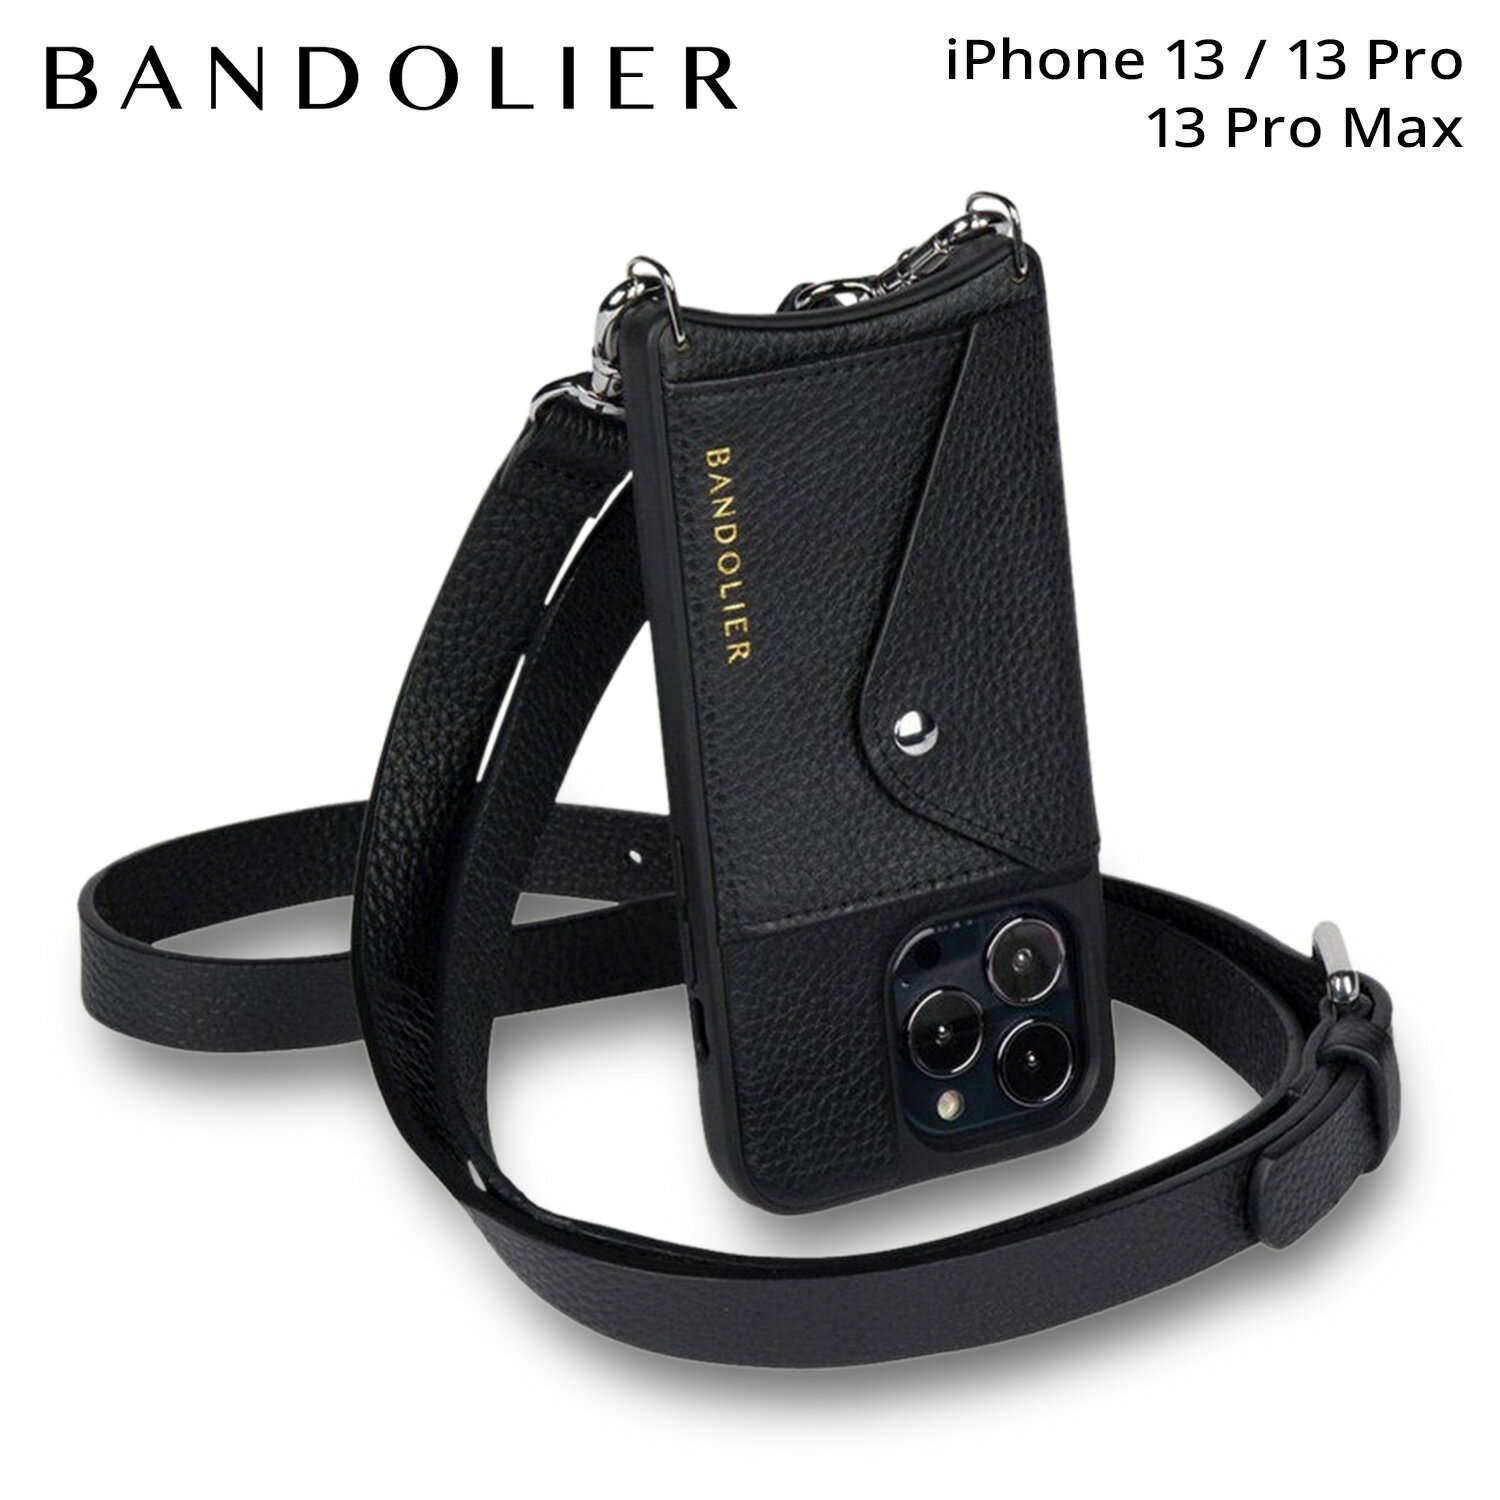 BANDOLIER バンドリヤー iPhone 13 13Pro iPhone 13 Pro Max スマホケース スマホショルダー 携帯 アイフォン ヘイリー サイドスロット シルバー メンズ レディース HAILEY SIDE SLOT SILVER ブラック 黒 14HAI